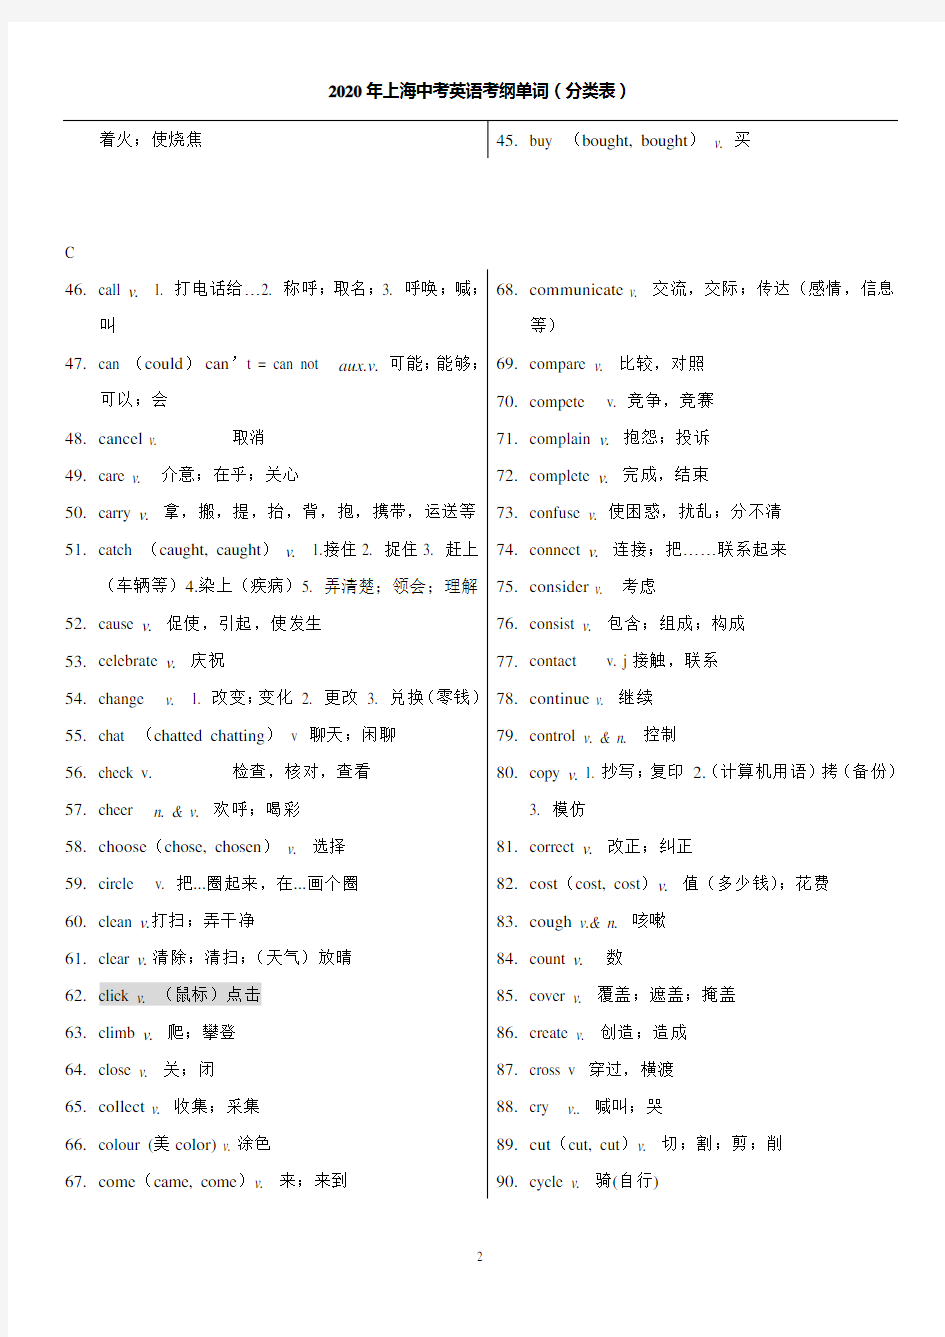 2020年上海中考英语考纲词汇分类表(动词)